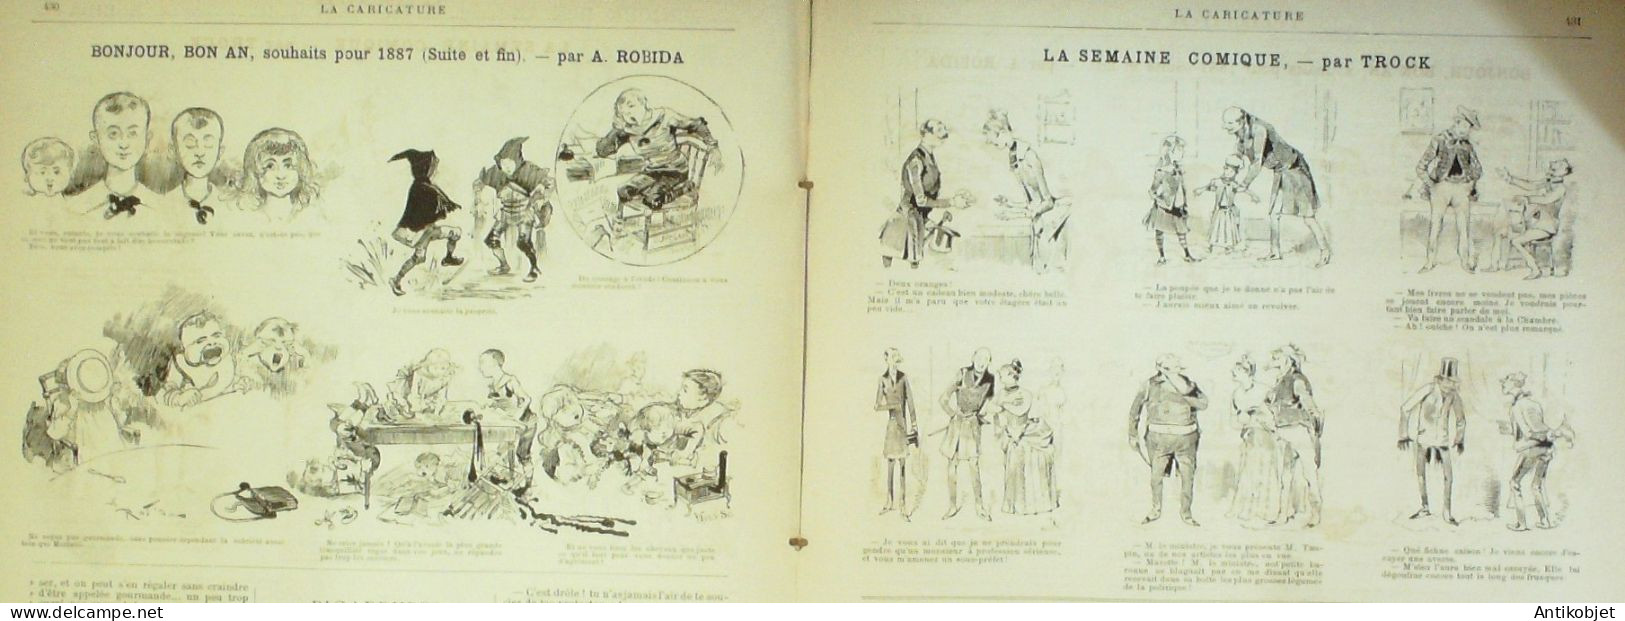 La Caricature 1887 N°366 Nouvel An Robida Sorel Trock Job - Revues Anciennes - Avant 1900